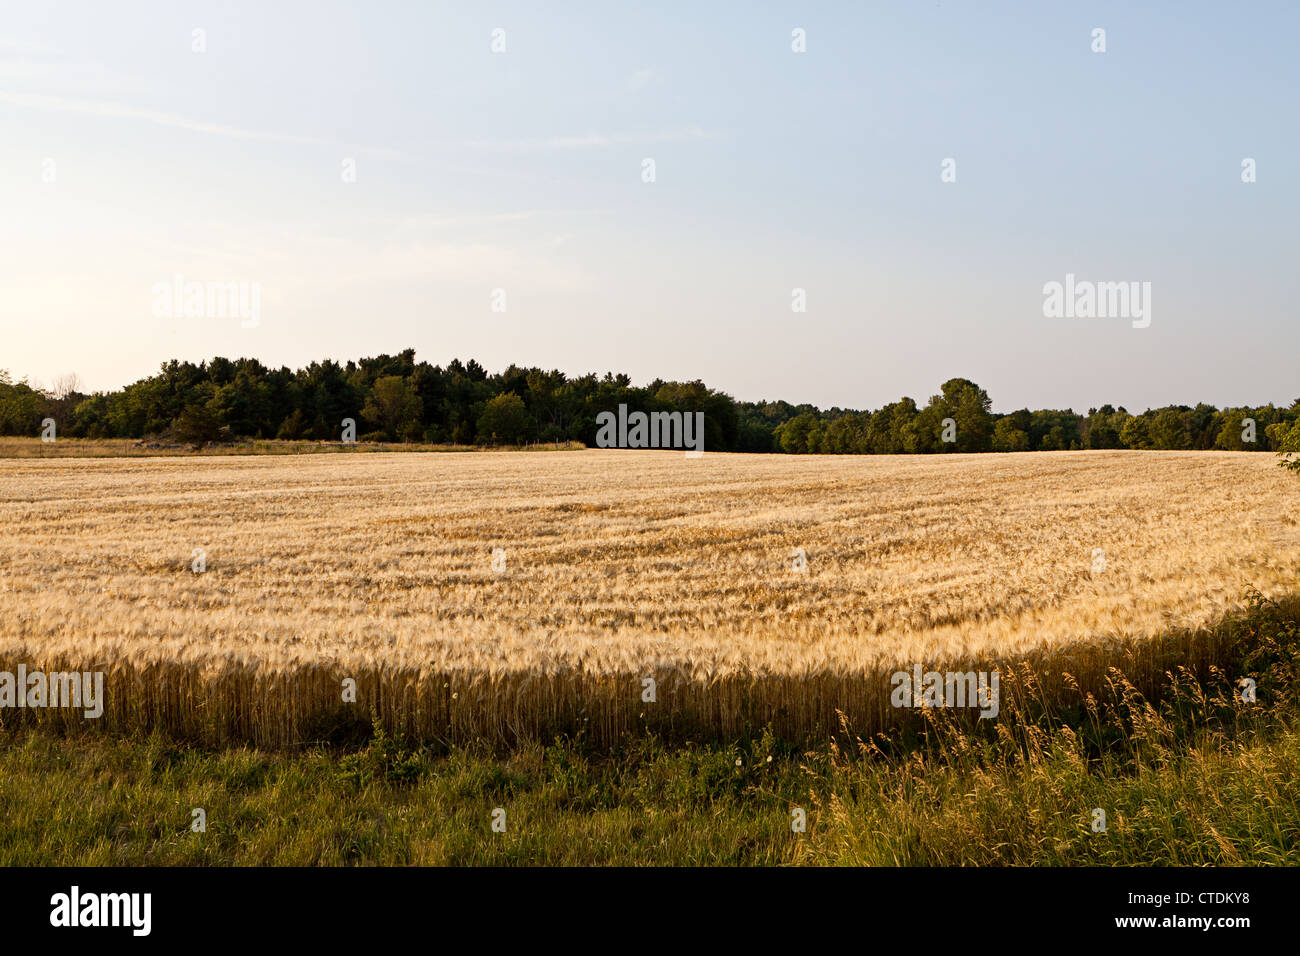 field of barley,cereal grain,Hordeum vulgare L Stock Photo